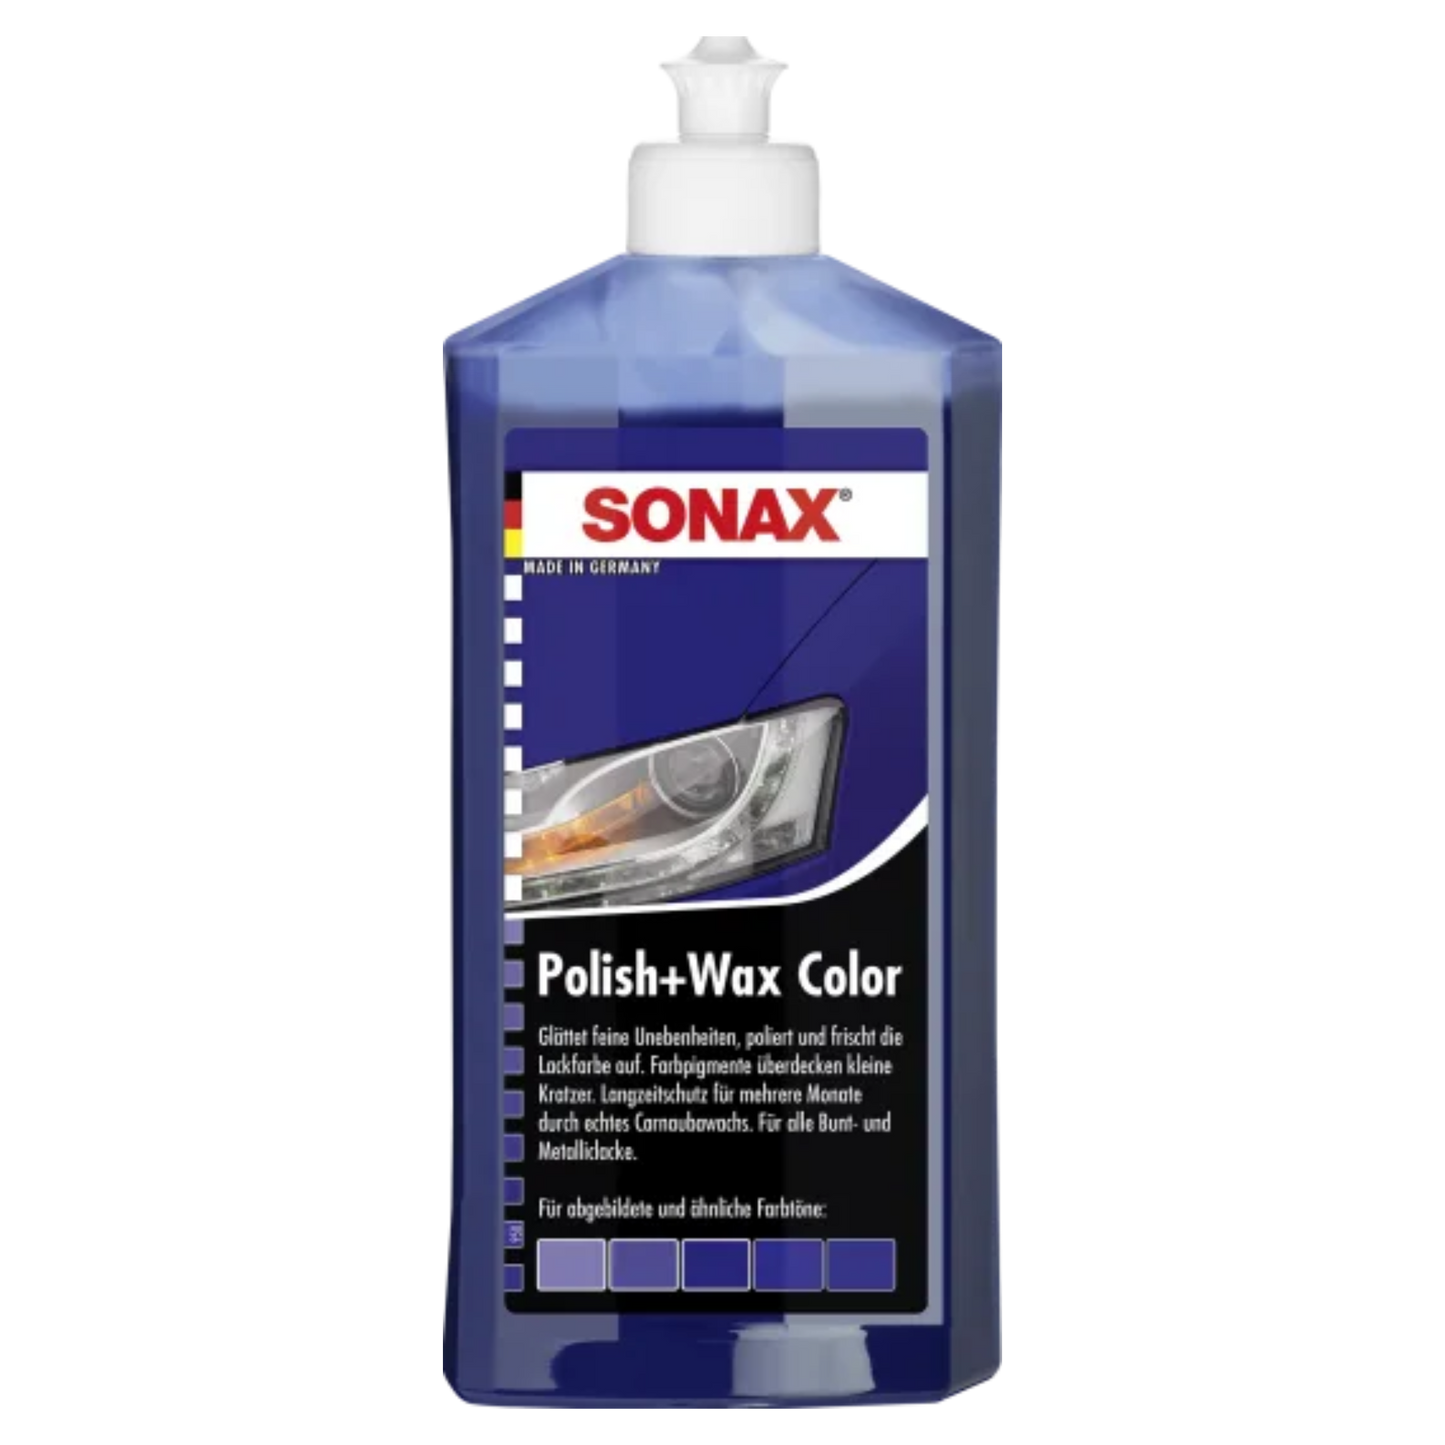 SONAX Polish + Wax Color - 500ml